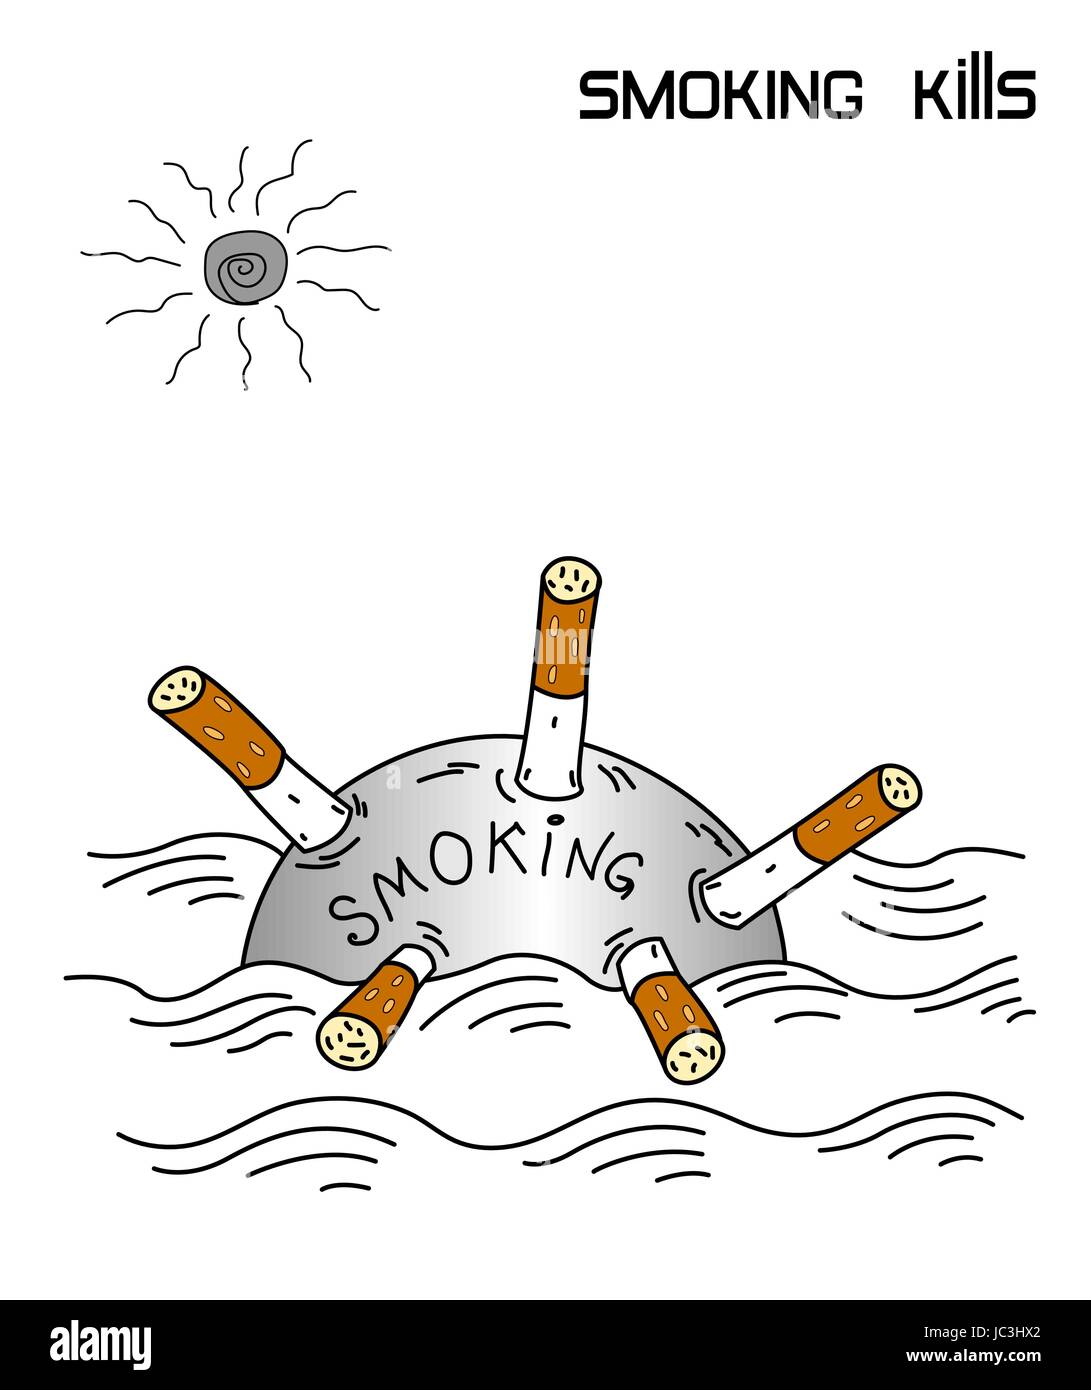 Il fumo uccide, il fumo di sigaretta contro-poster pubblicitario Illustrazione Vettoriale